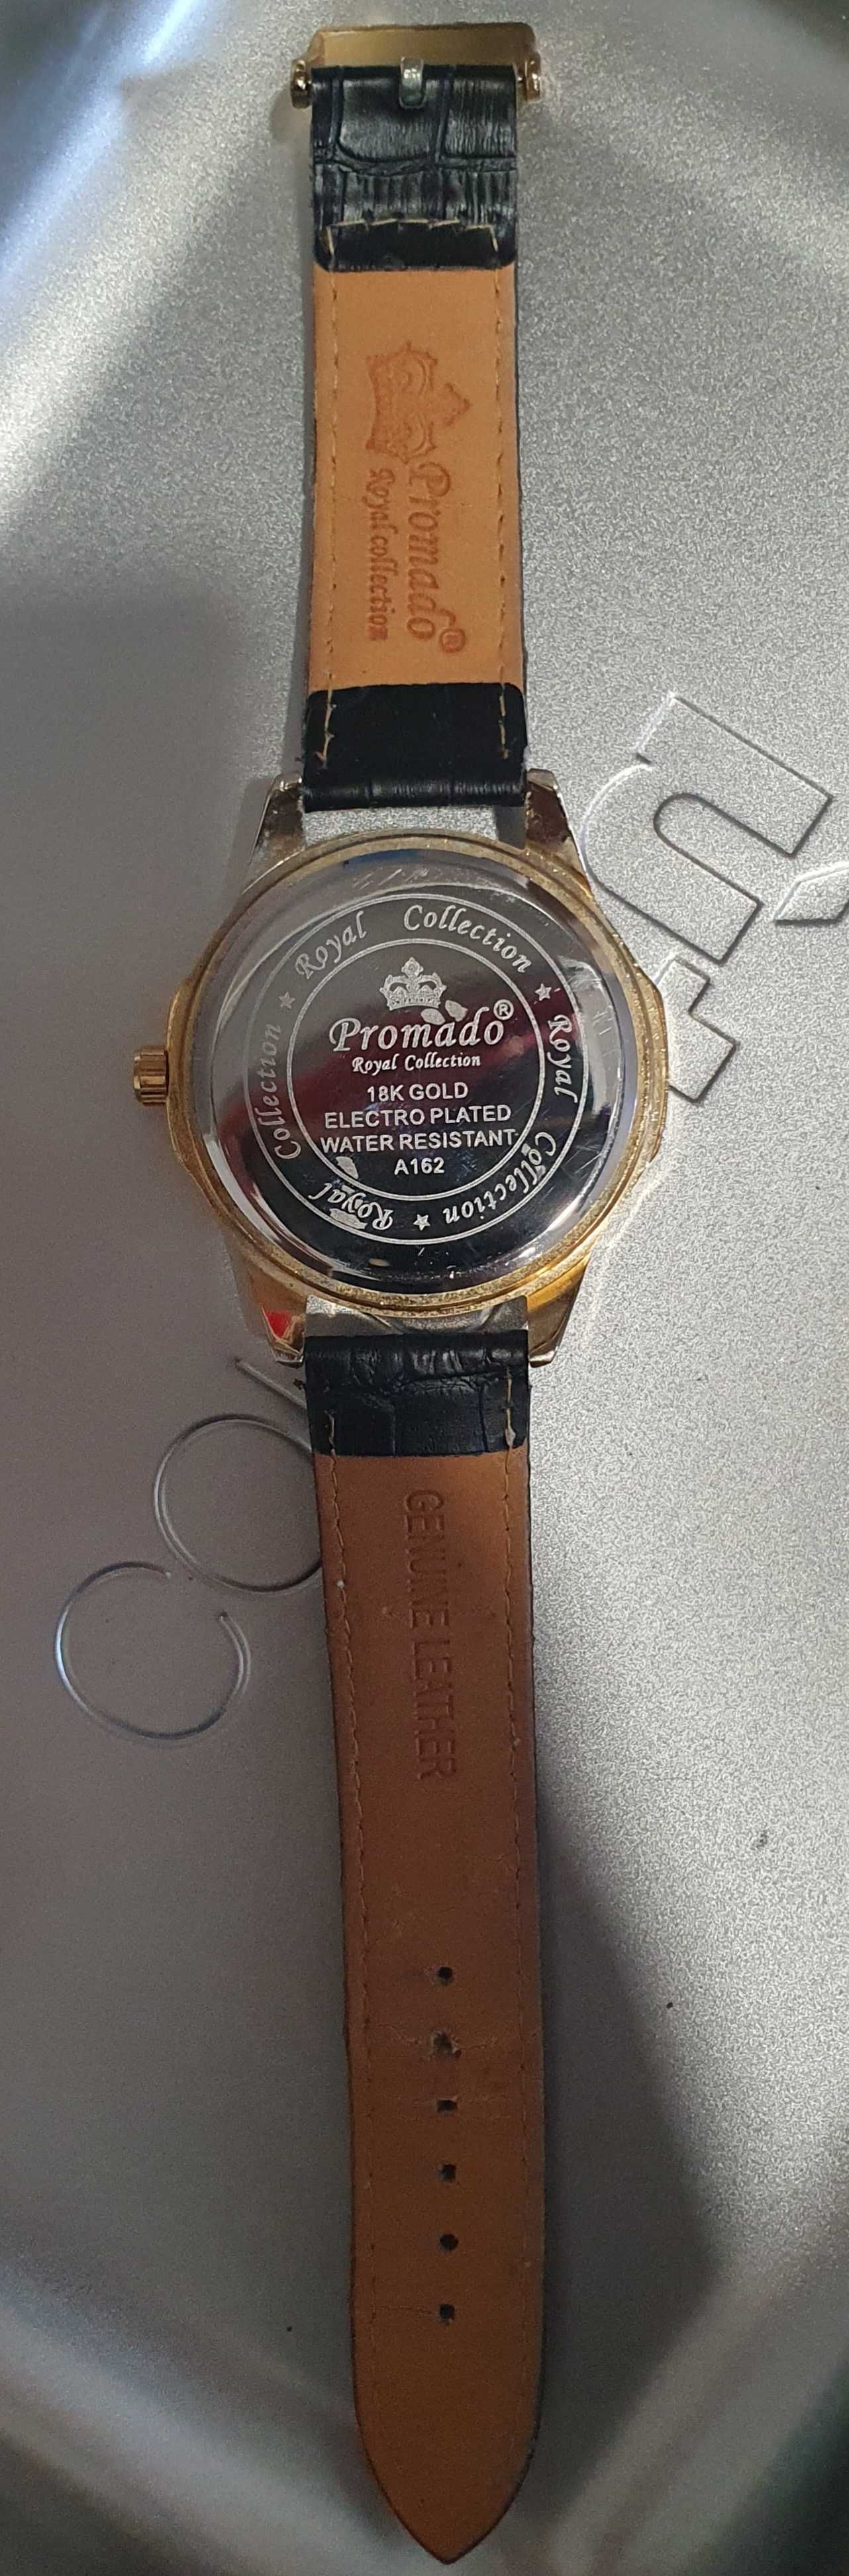 Relógio Promado Royal Collection 18k Gold